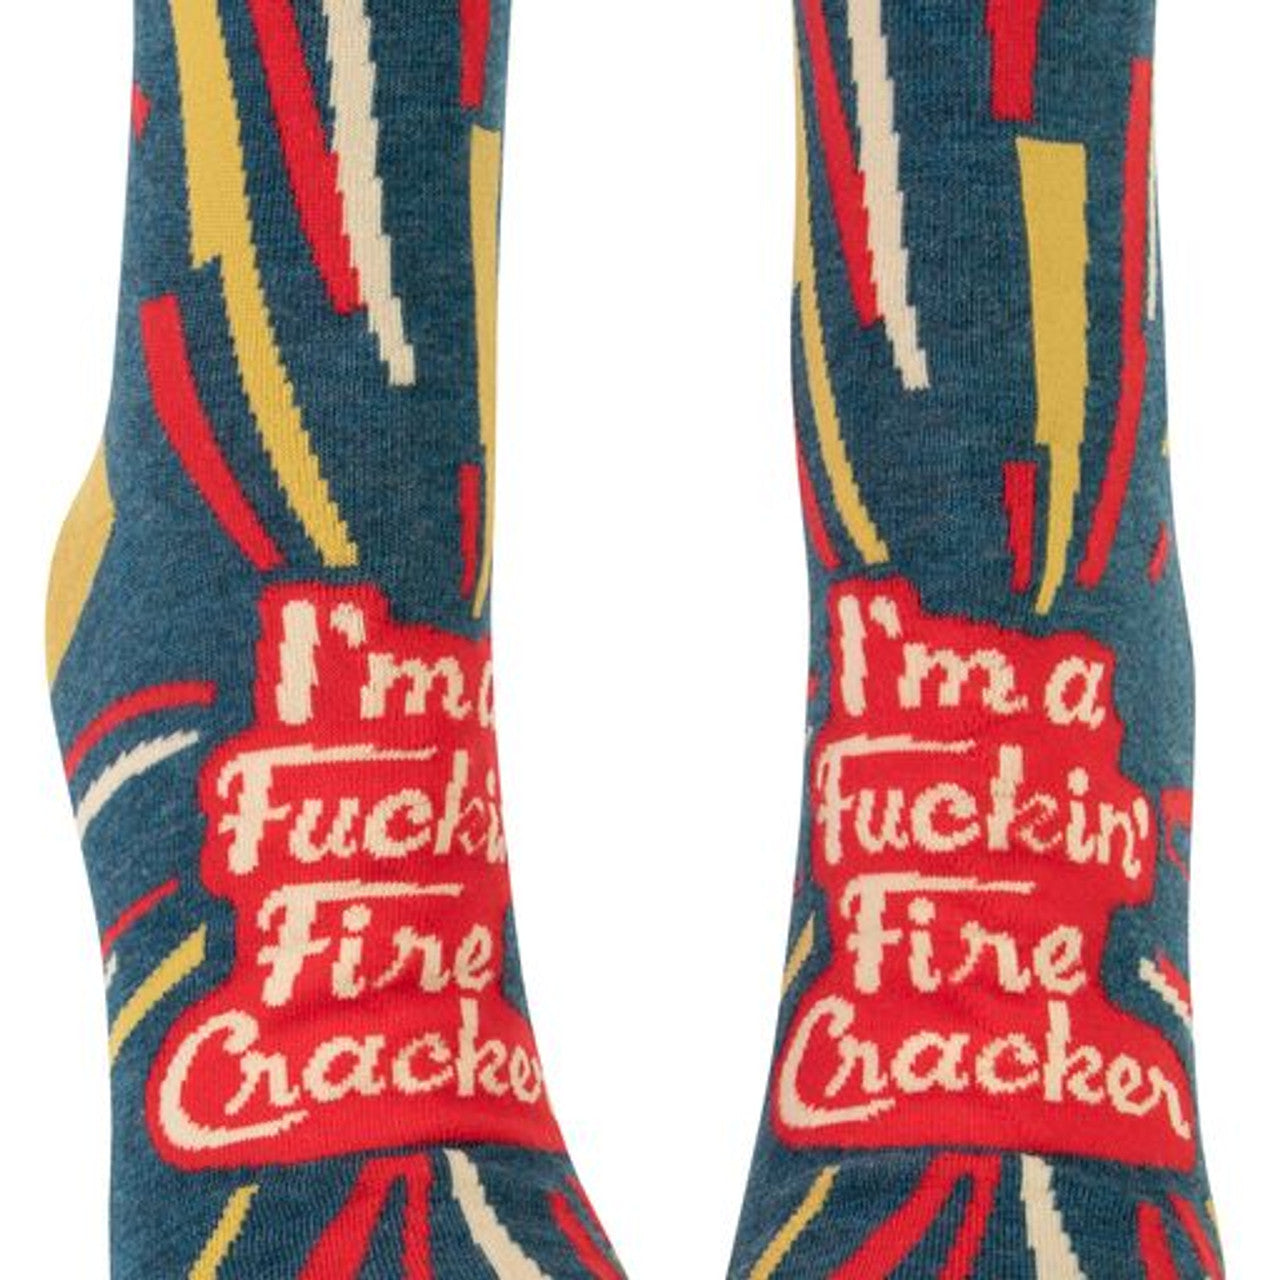 F*ckin' Fire Cracker - Women's Ankle Socks